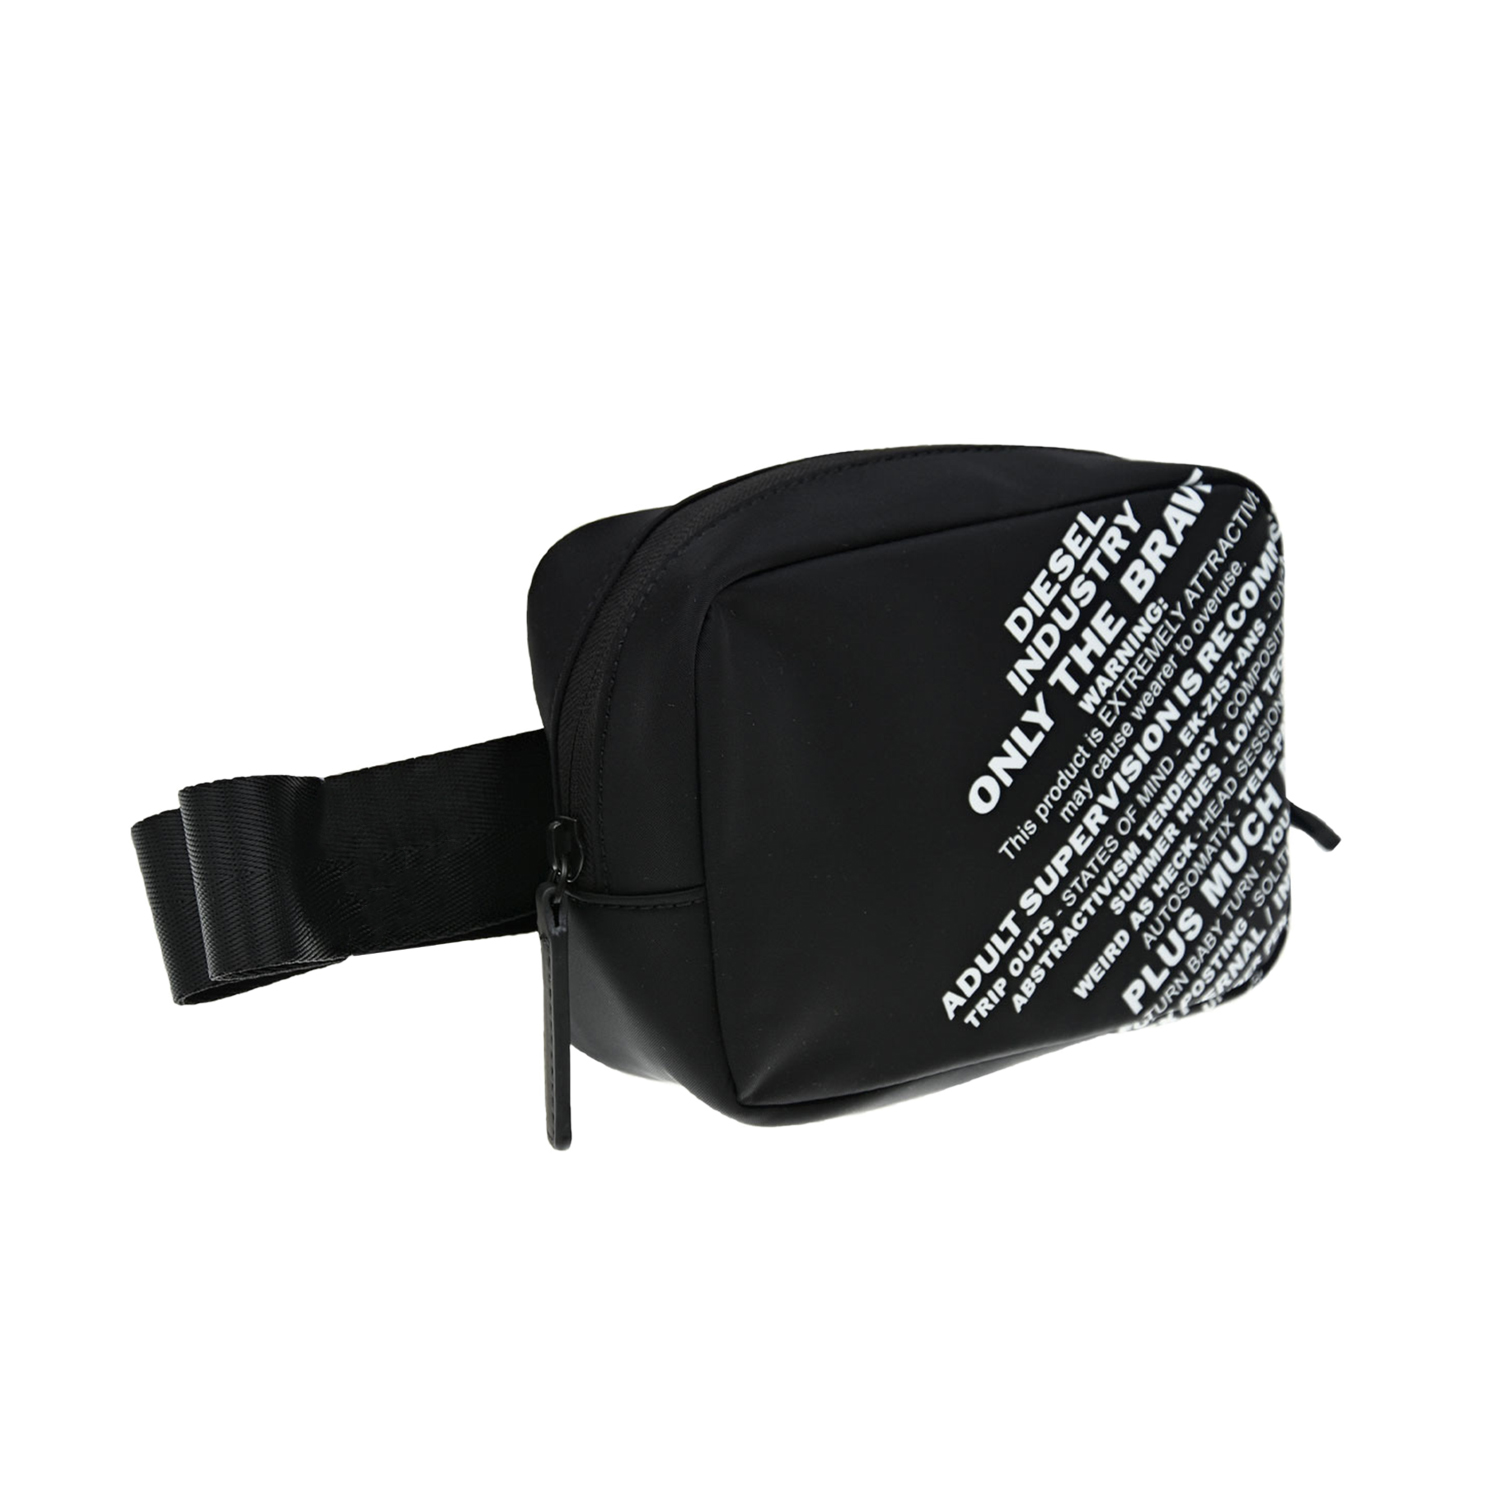 Черная сумка-пояс с надписями, 17x13x4 см Diesel детская, размер unica, цвет черный - фото 2